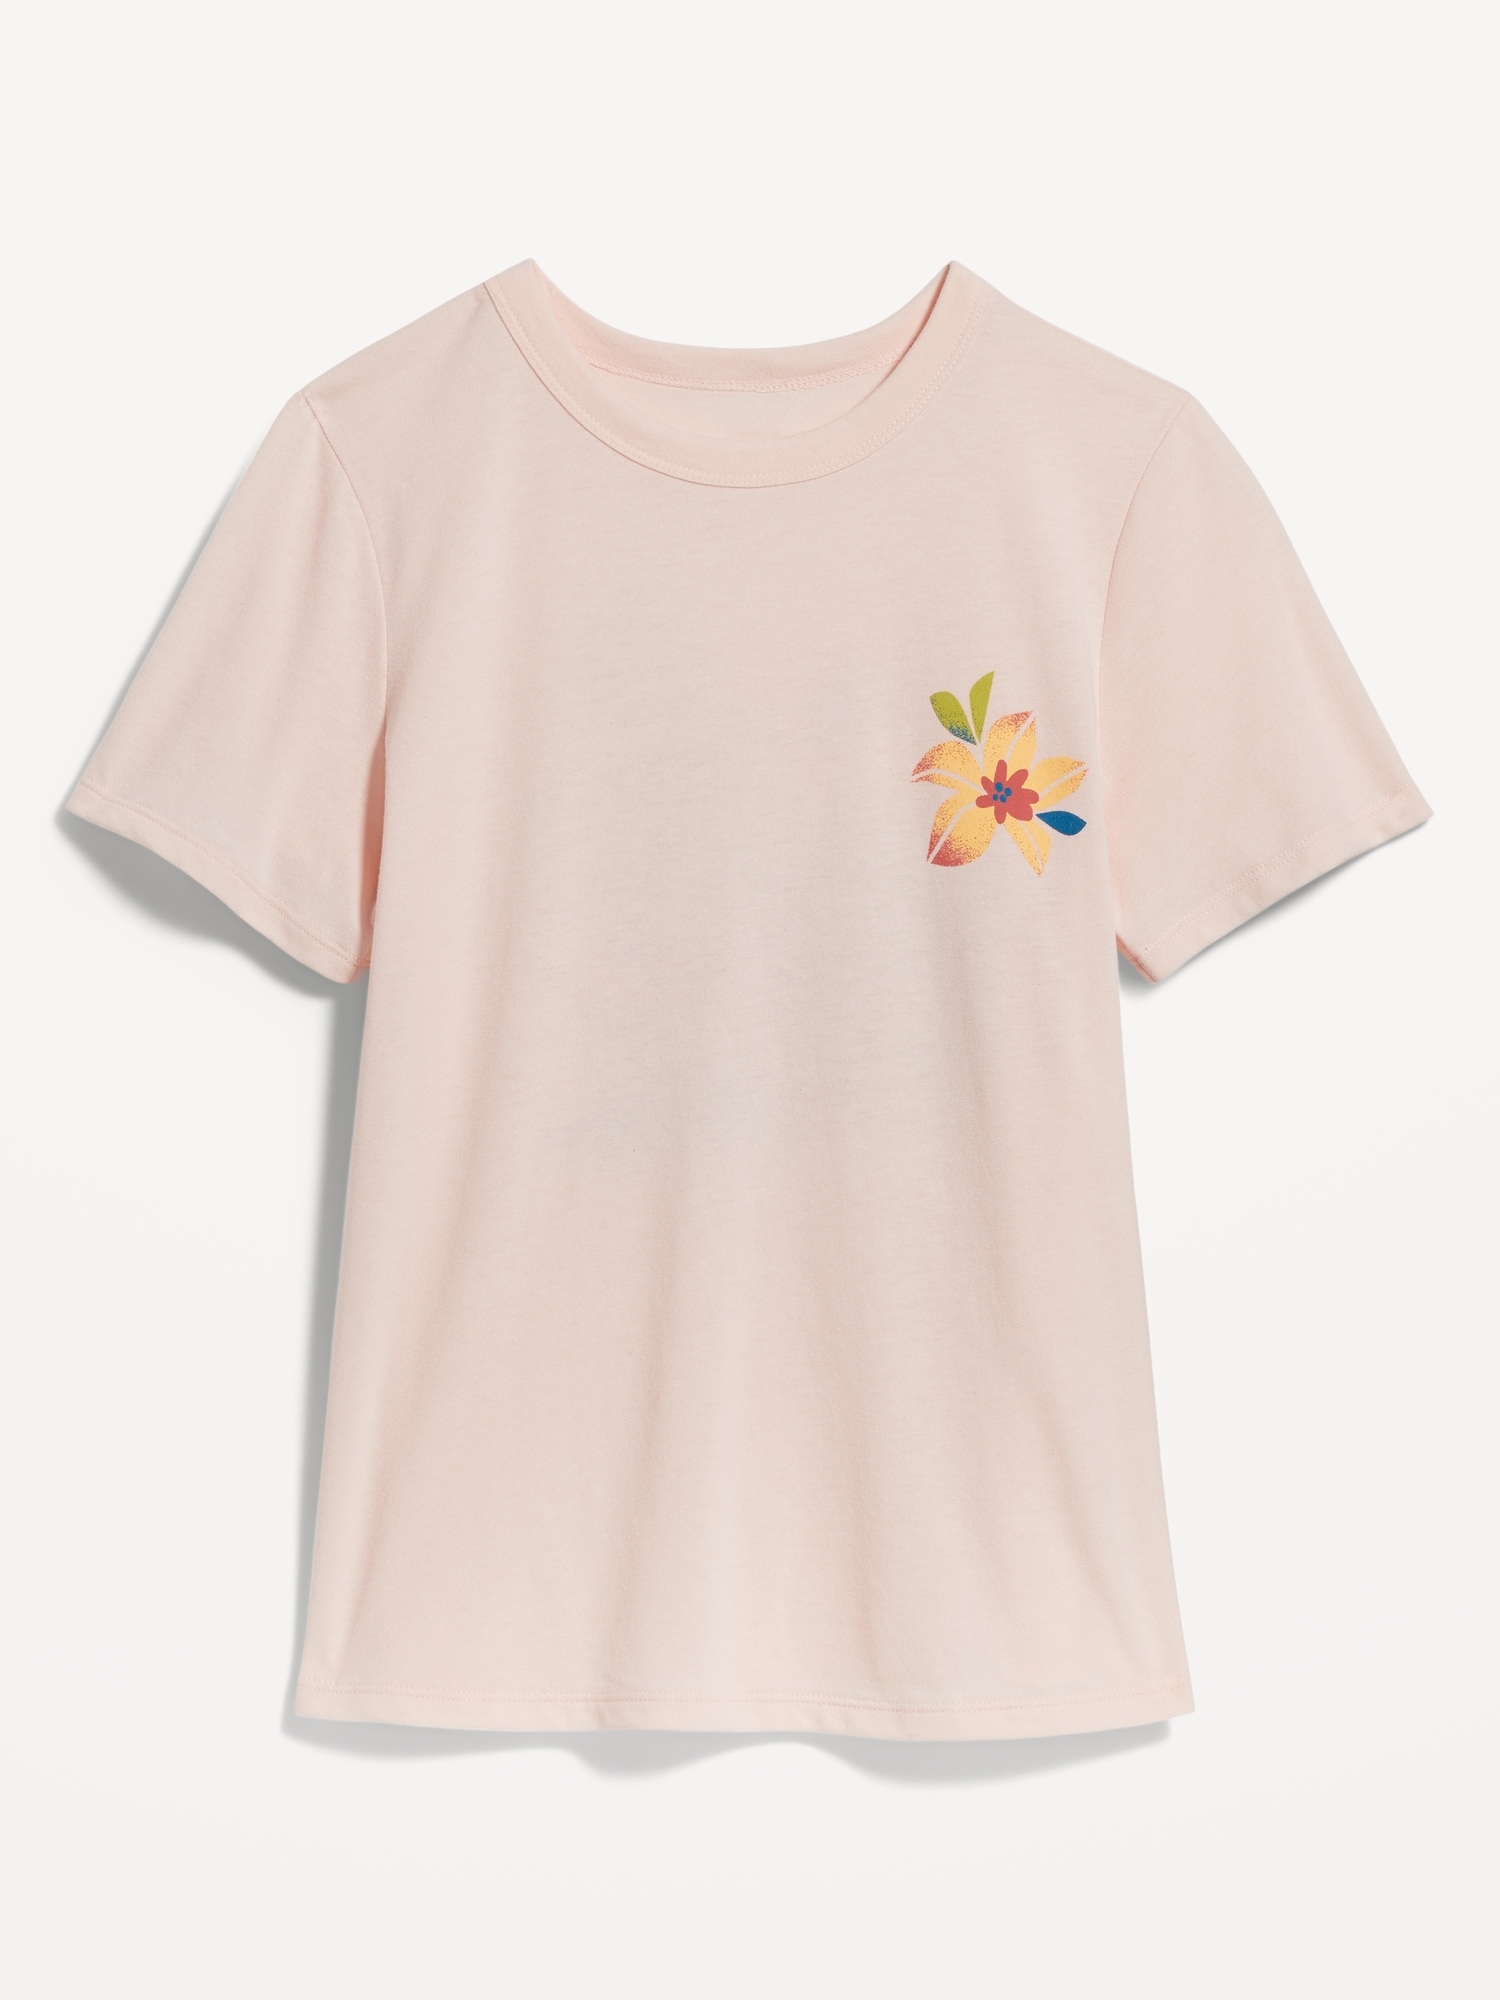 Ladies - Pink Printed T-Shirt - Size: XS - H&M